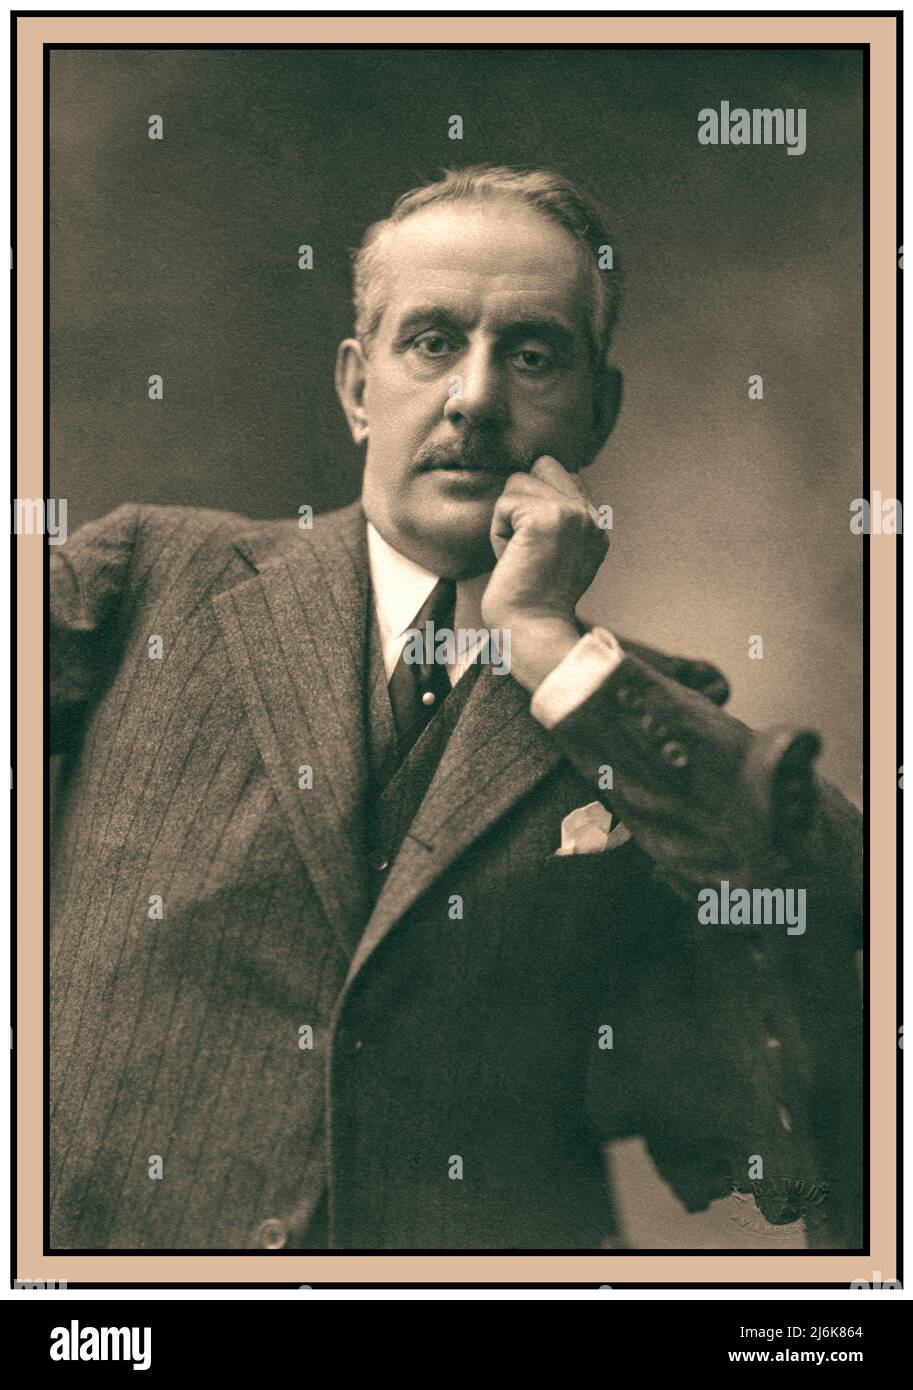 PUCCINI Vintage Retro Portrait of Giacomo Puccini, composer (1858-1924). Photo by Attilio Badodi, Milano, 1924. Stock Photo